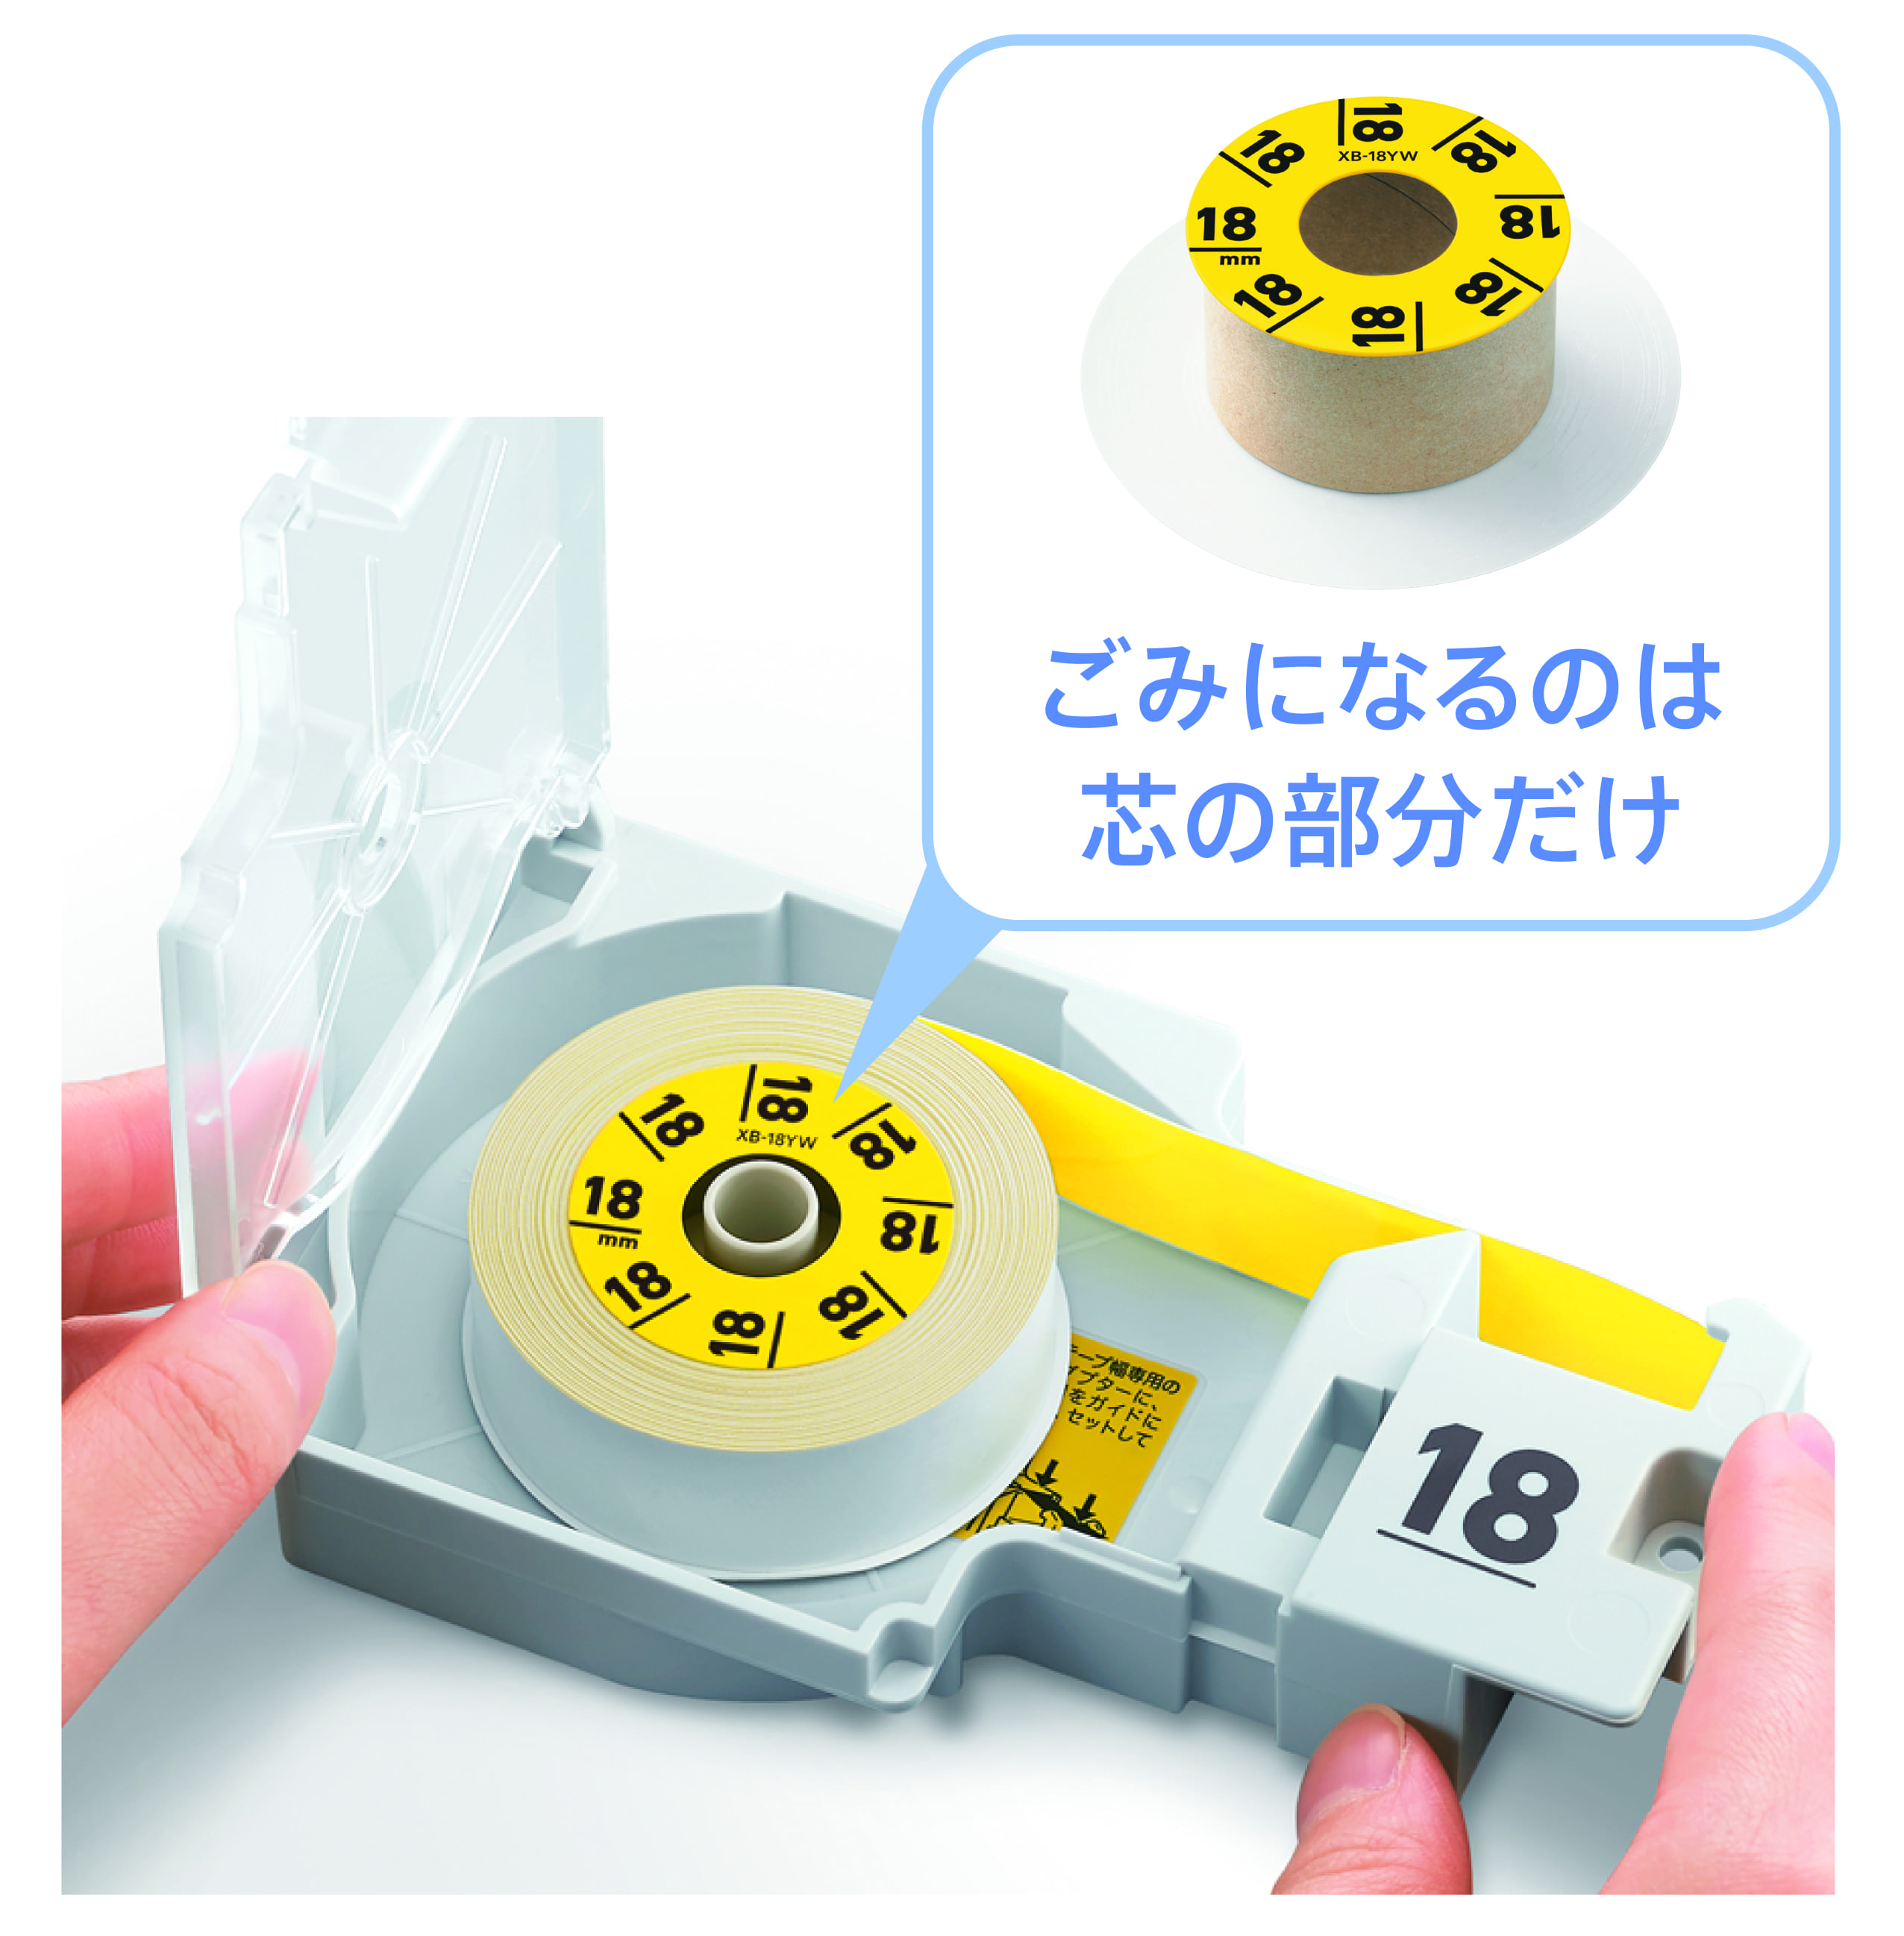 テープ詰め替え方式で、プラスチックごみを削減したラベルライター「Lateco」にラインアップ追加